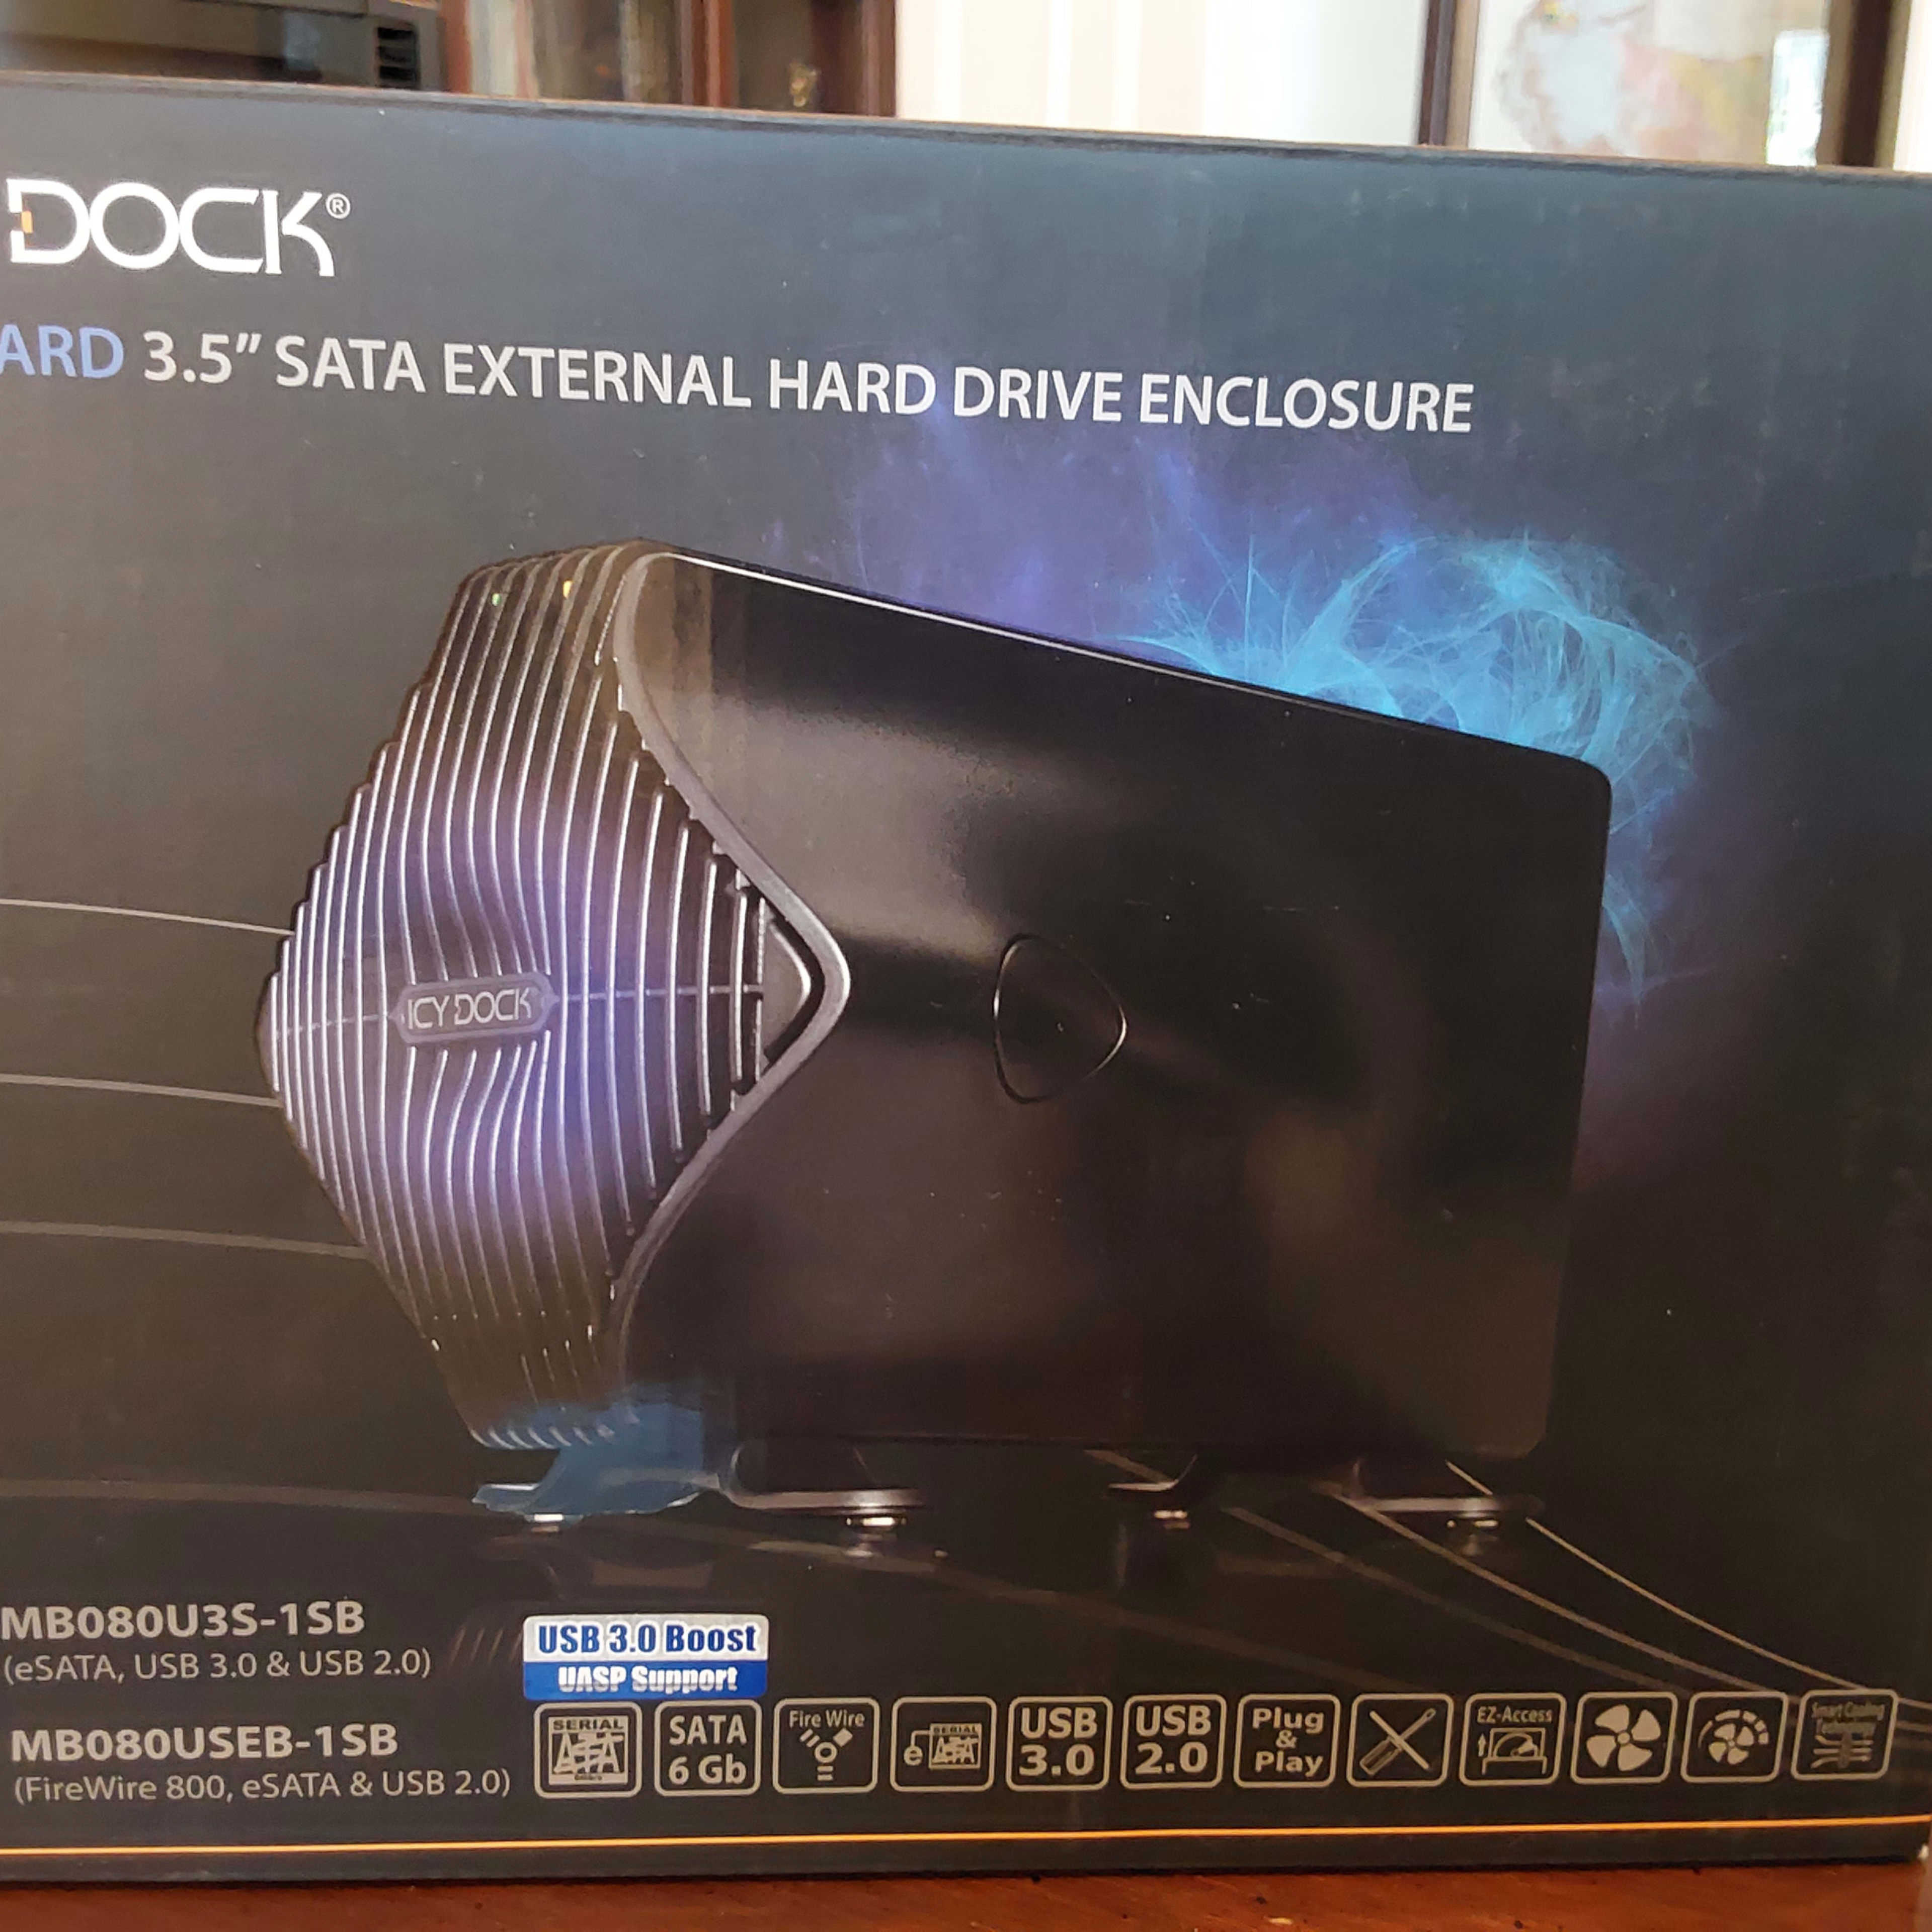 ICY DOCK Blizzard USB 3.0 & eSATA External 3.5” Sata Hard Drive Enclosure (MB080U3S-1SB)